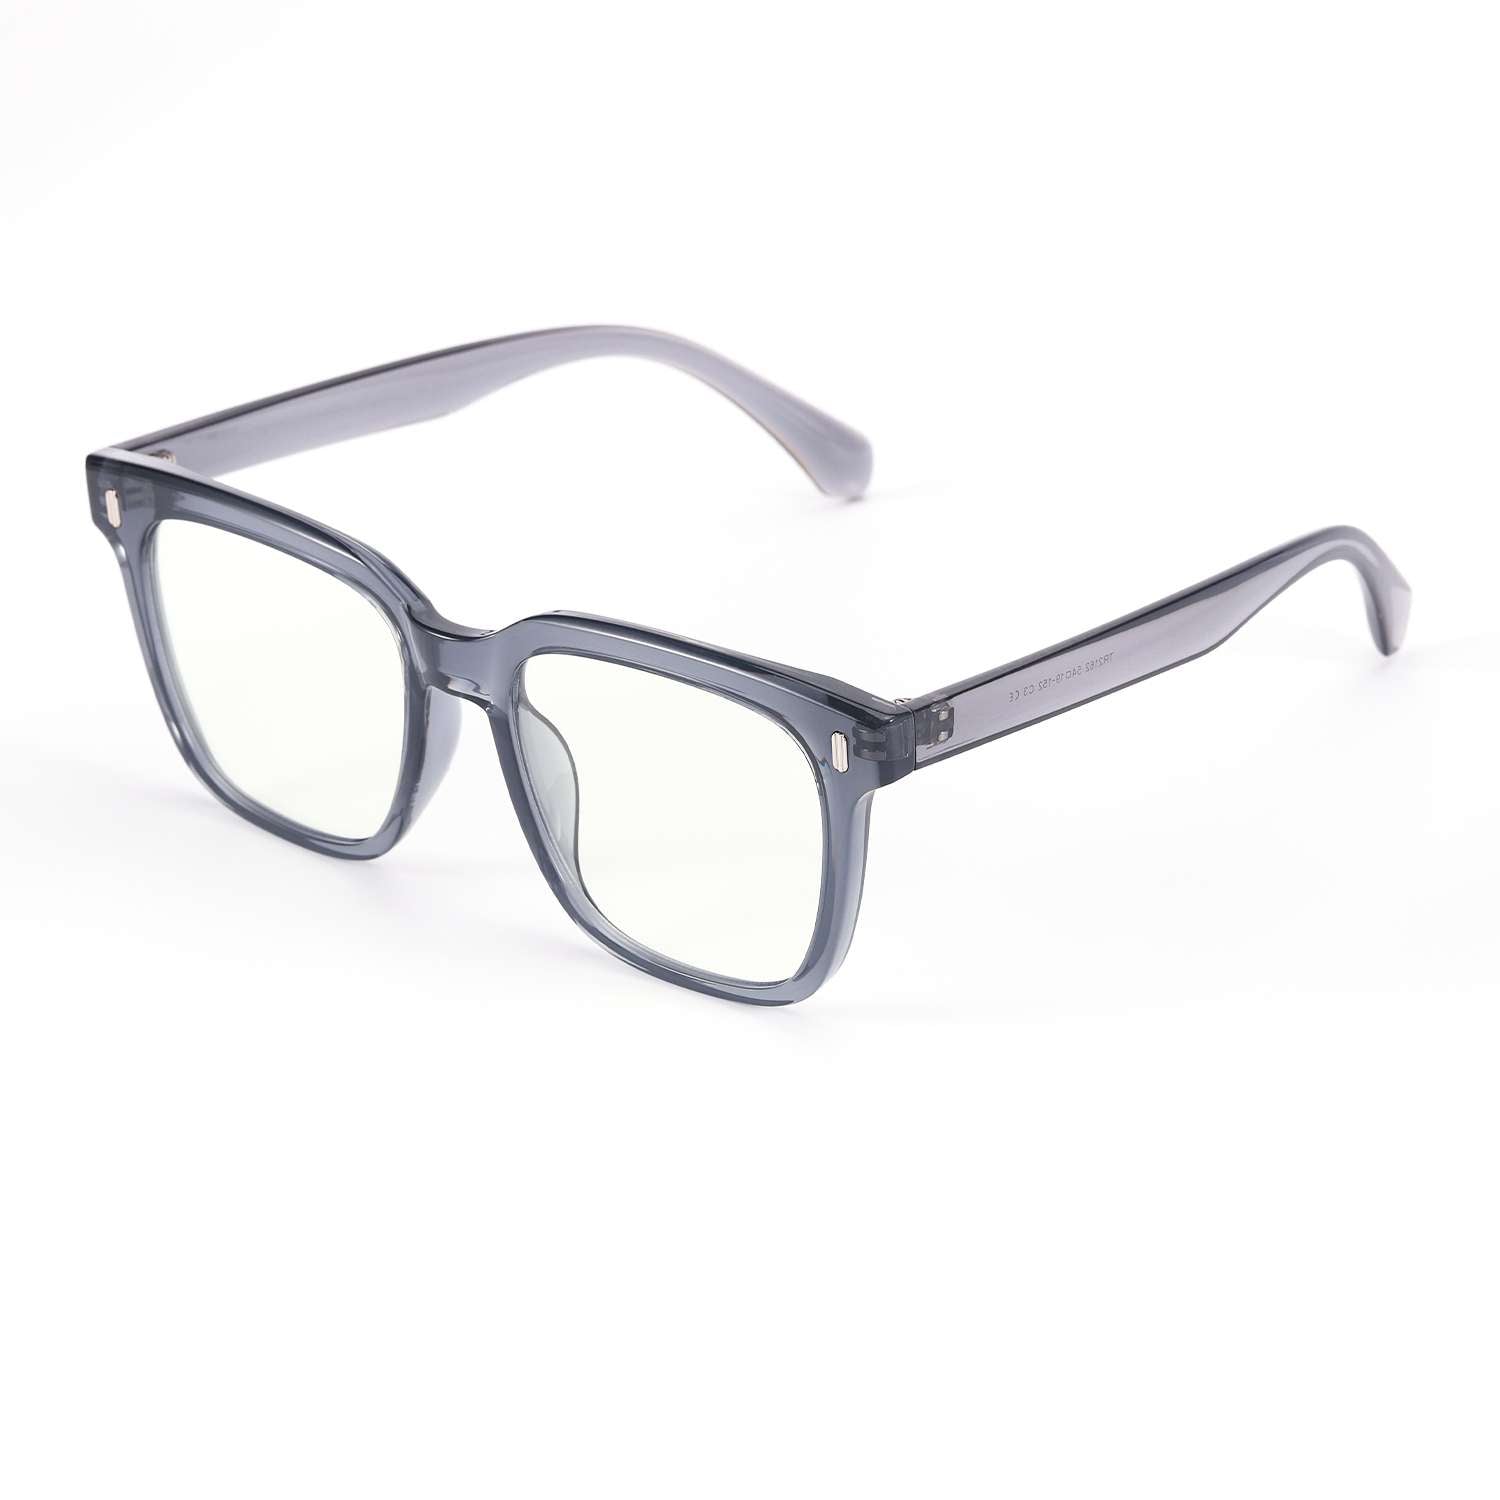 Shop Louis Vuitton Sunglasses (Z1682W, Z1682E) by lifeisfun